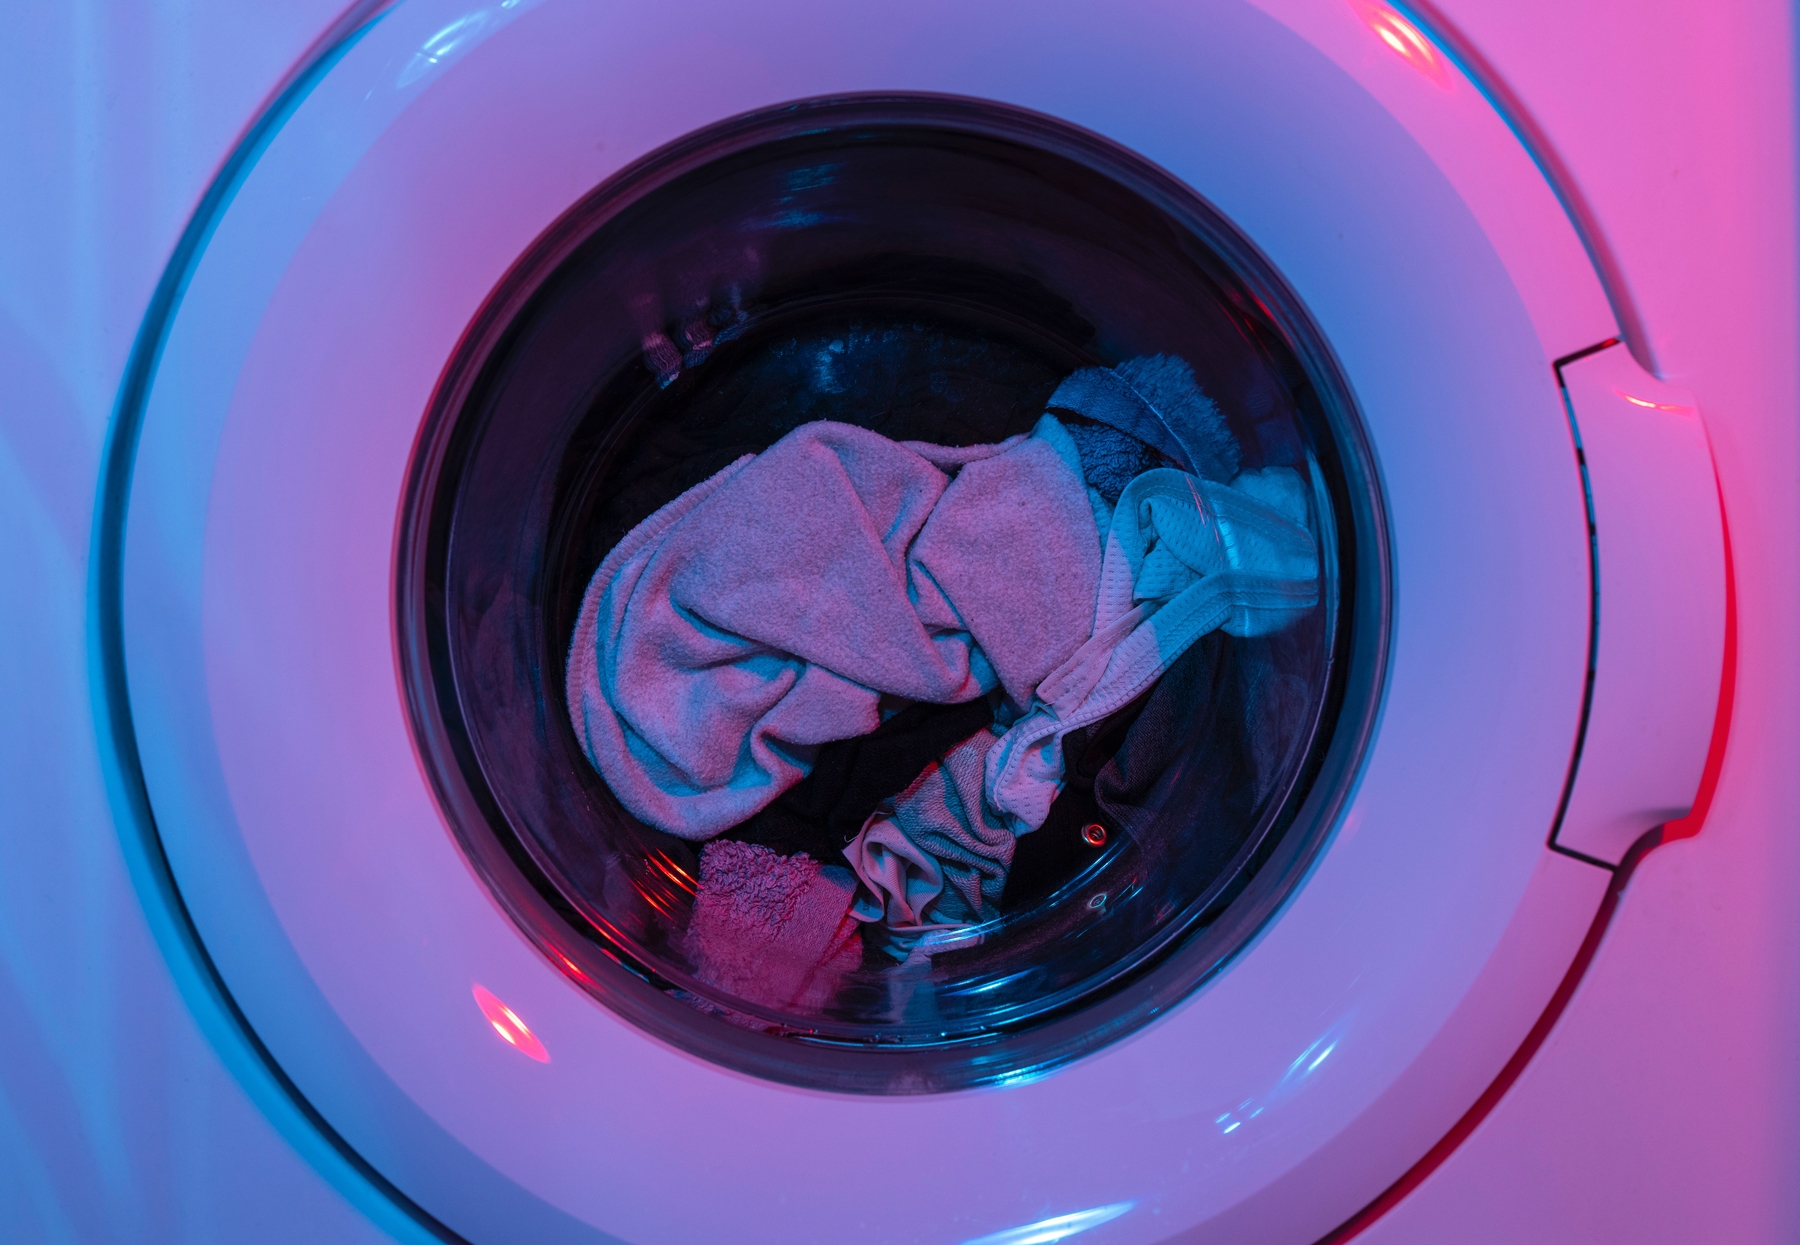 Κουτσουλιά στα ρούχα: Πώς θα την καθαρίσετε